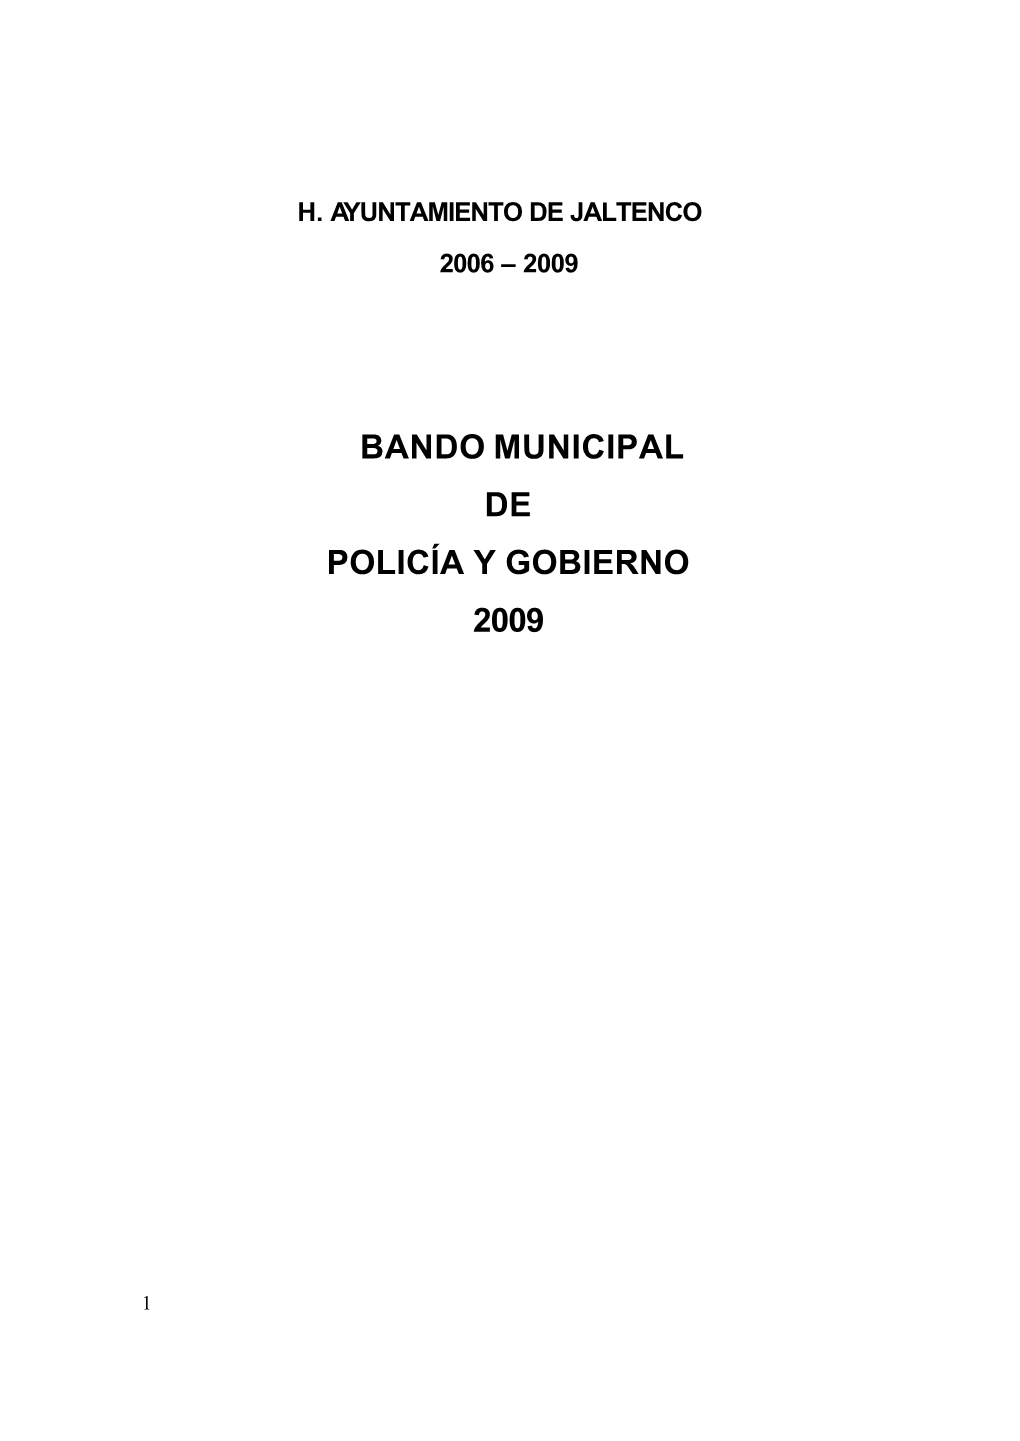 Bando Municipal De Jaltenco 2009